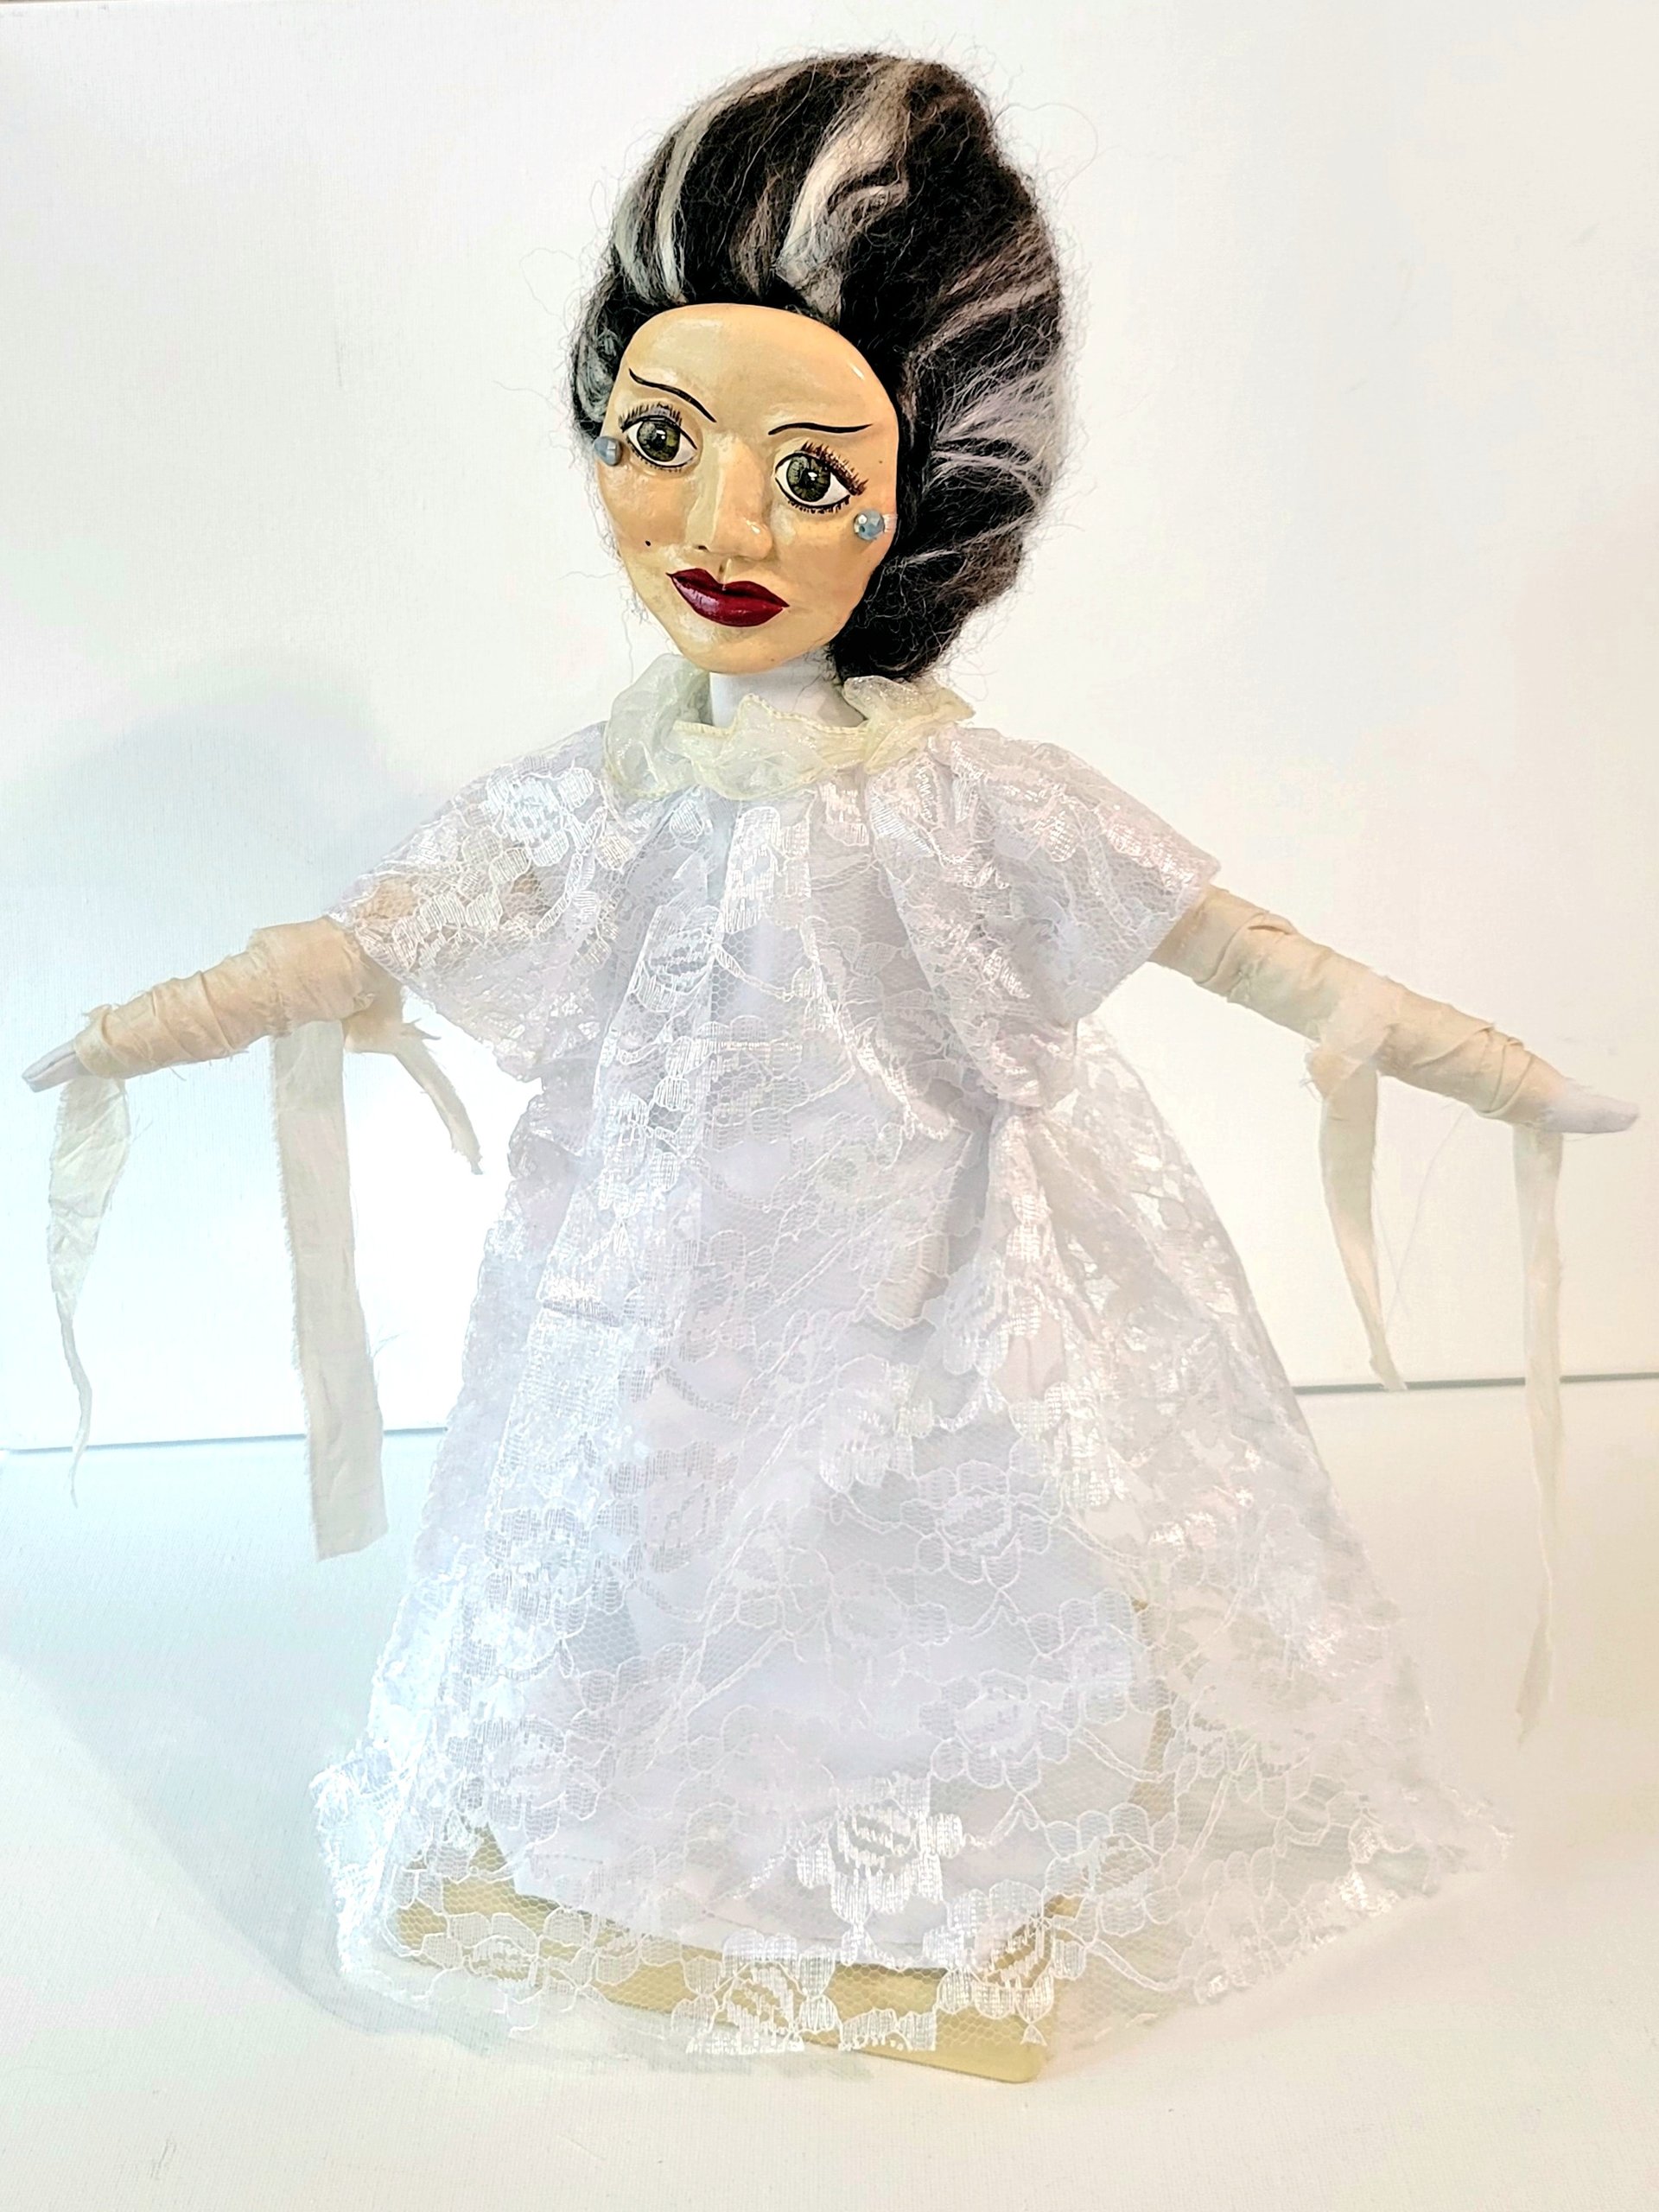 Bride of Frankenstein  - OOAK Art Doll - Spooky Women